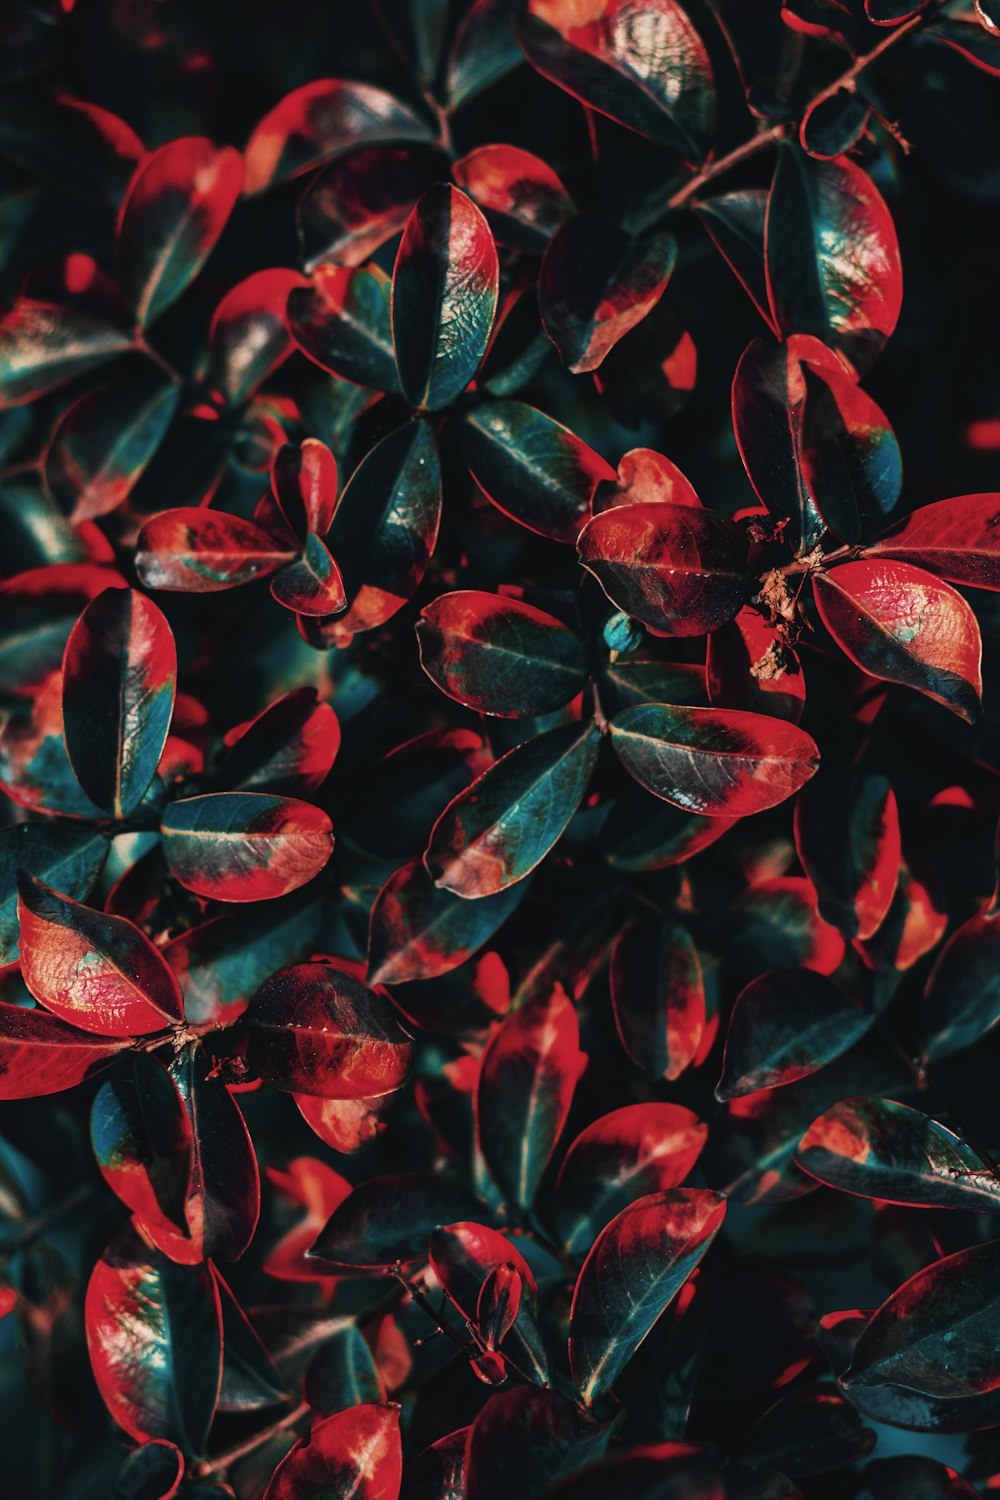 Un primo piano di un cespuglio con foglie rosse